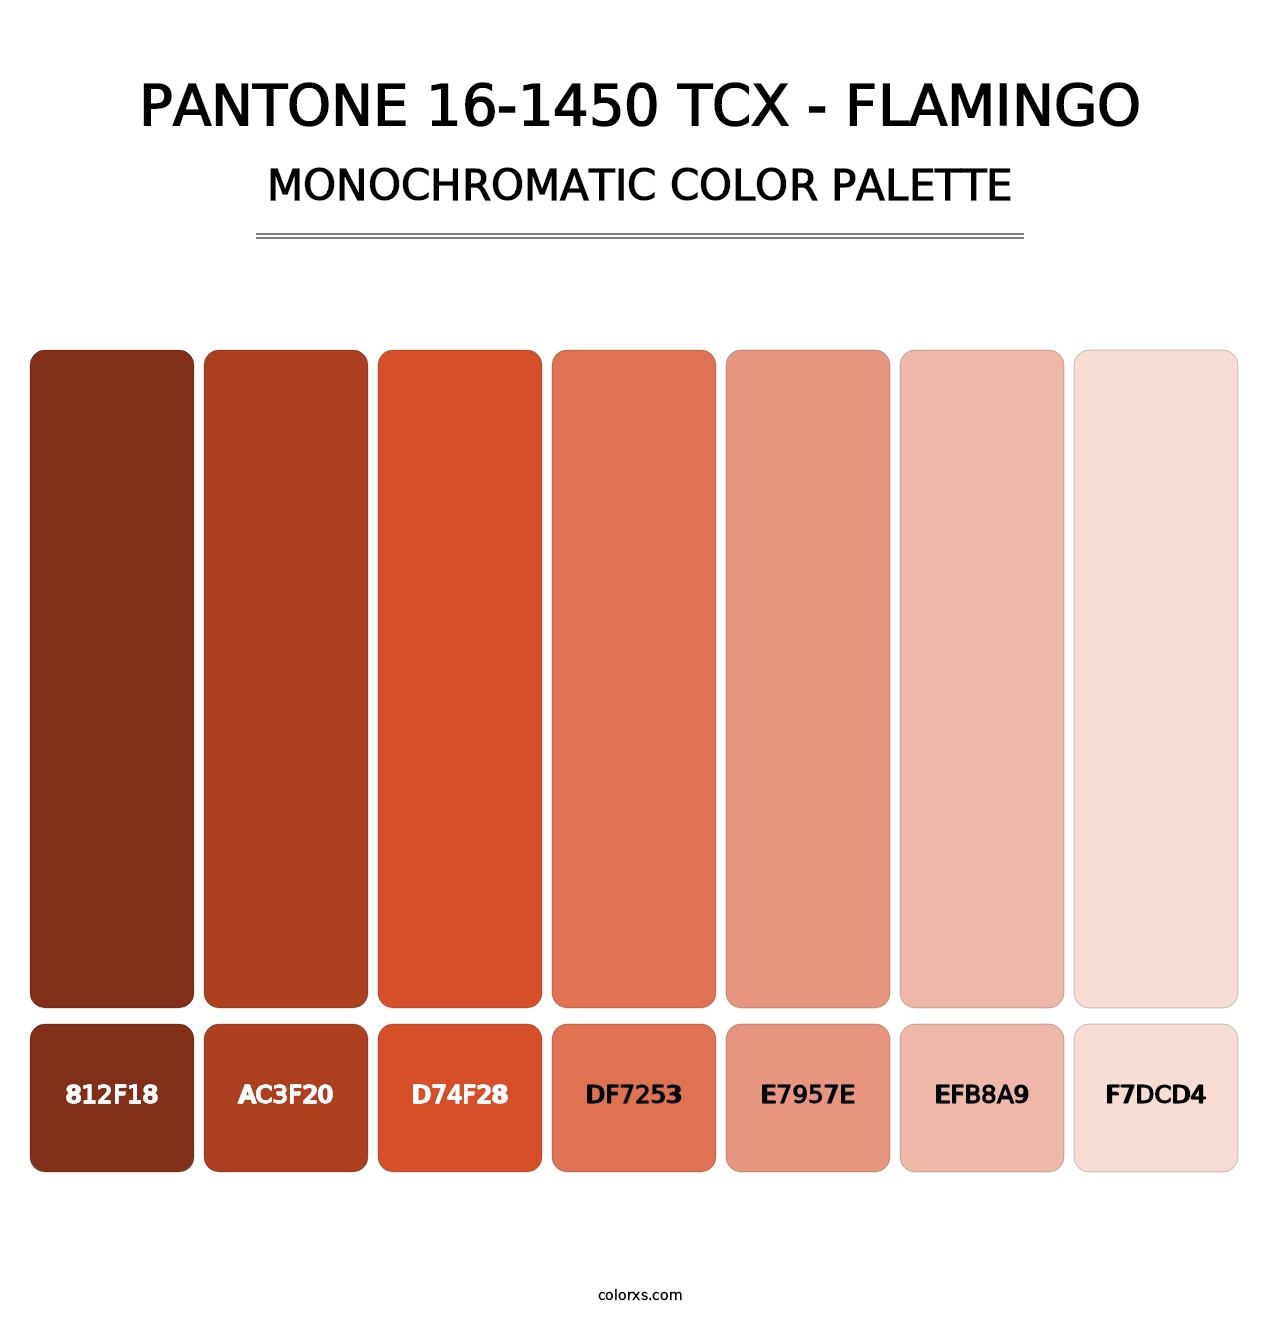 PANTONE 16-1450 TCX - Flamingo - Monochromatic Color Palette